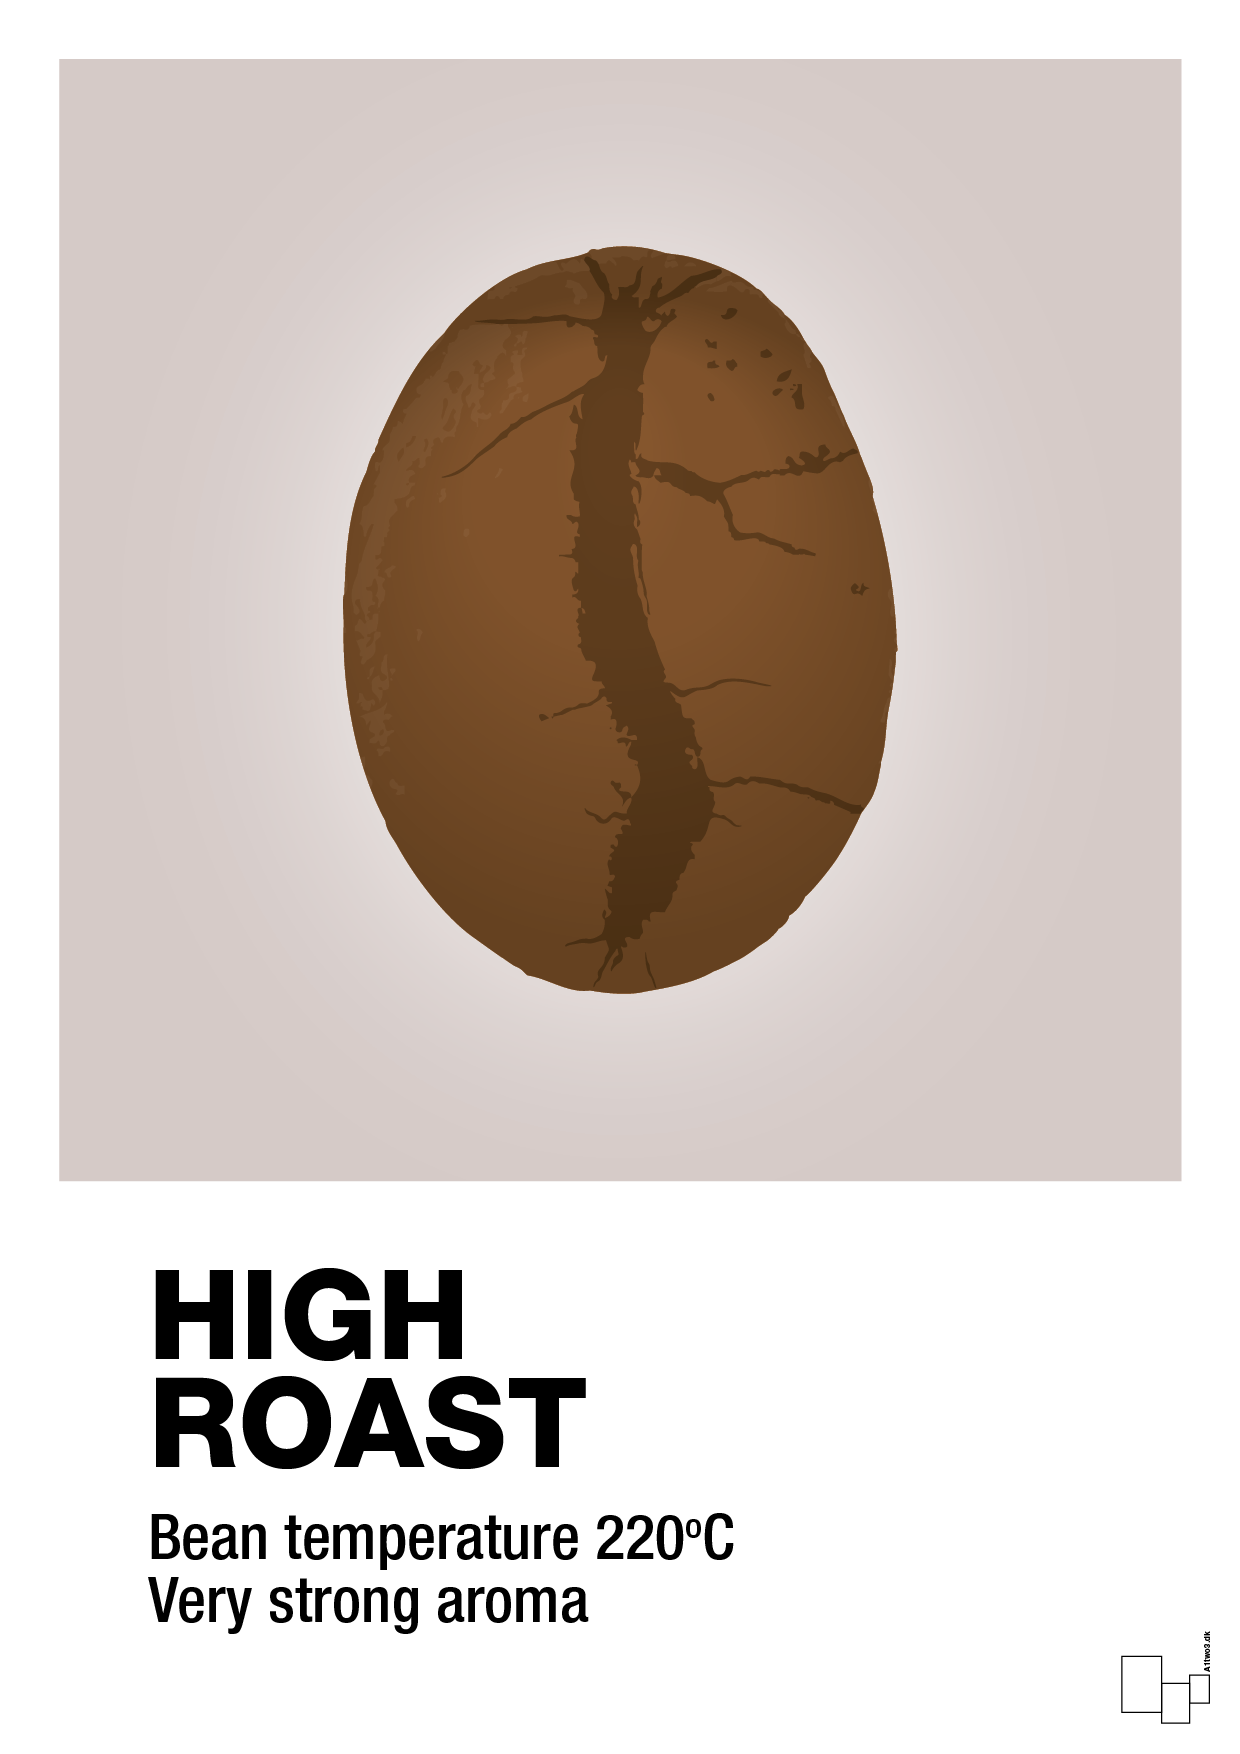 high roast - Plakat med Mad & Drikke i Broken Beige